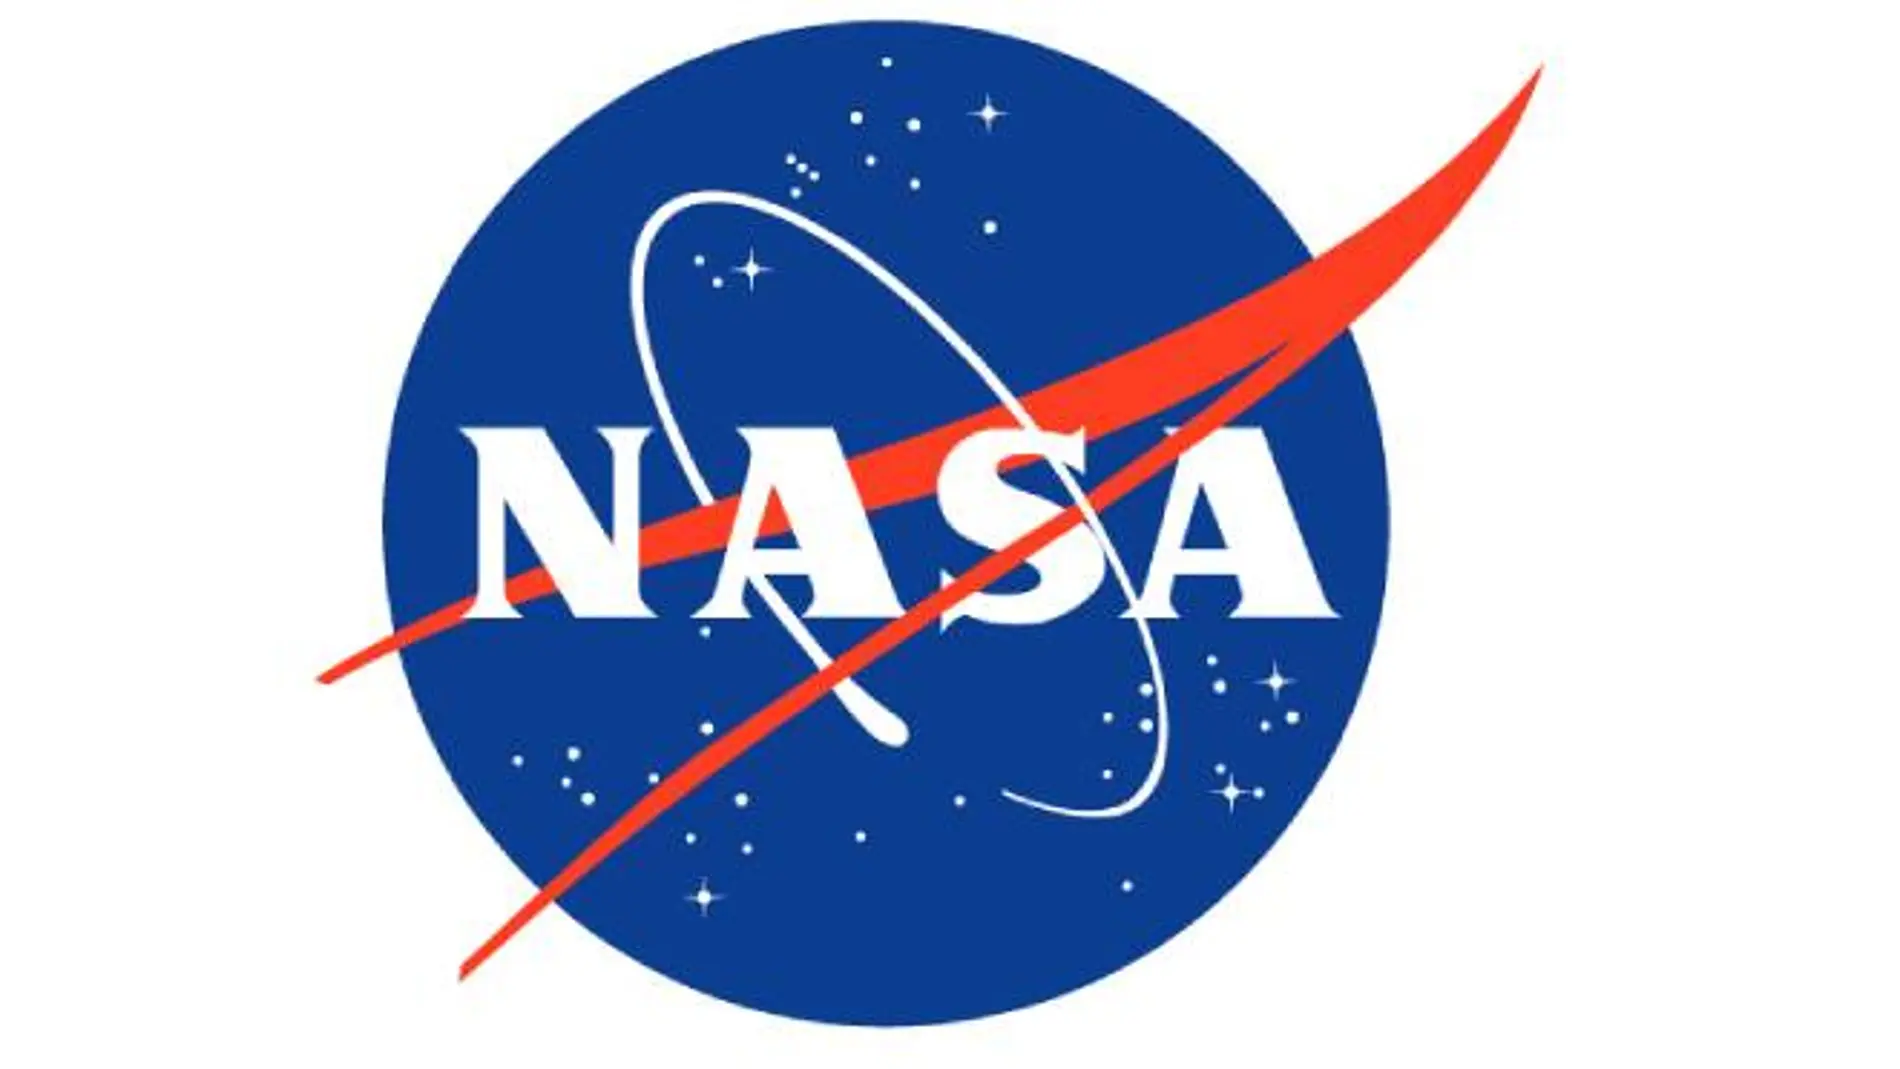 La NASA lanza NASA+, un nuevo servicio de streaming sin anuncios y gratuito.